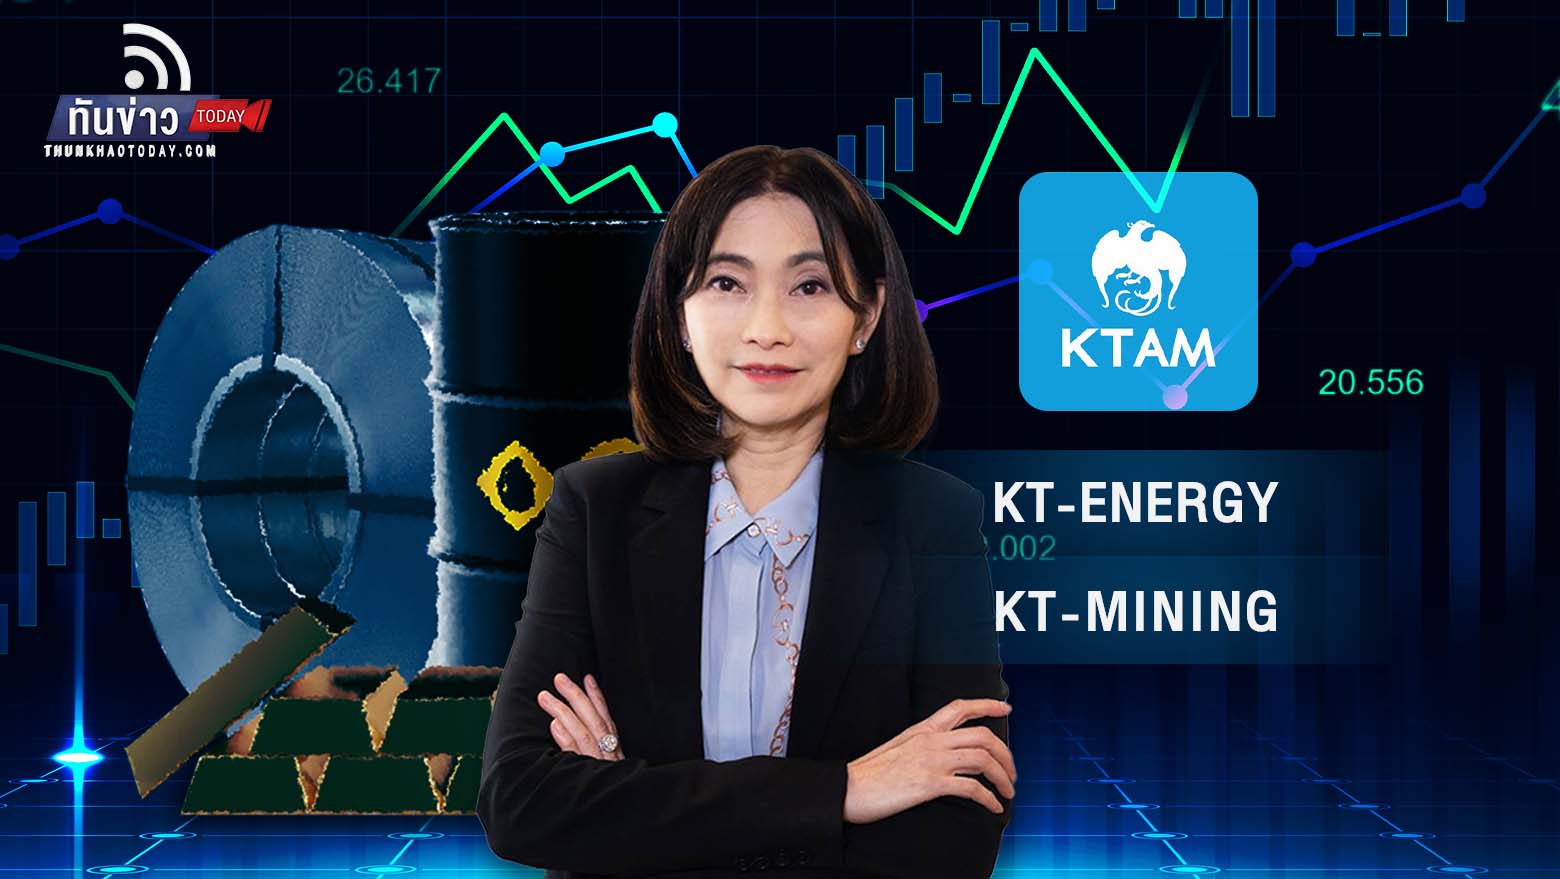 KTAM ลุยออก 2 กองทุนโภคภัณฑ์  รับเทรนด์ราคาพลังงาน สู้เงินเฟ้อ ดอกเบี้ยขาขึ้น!